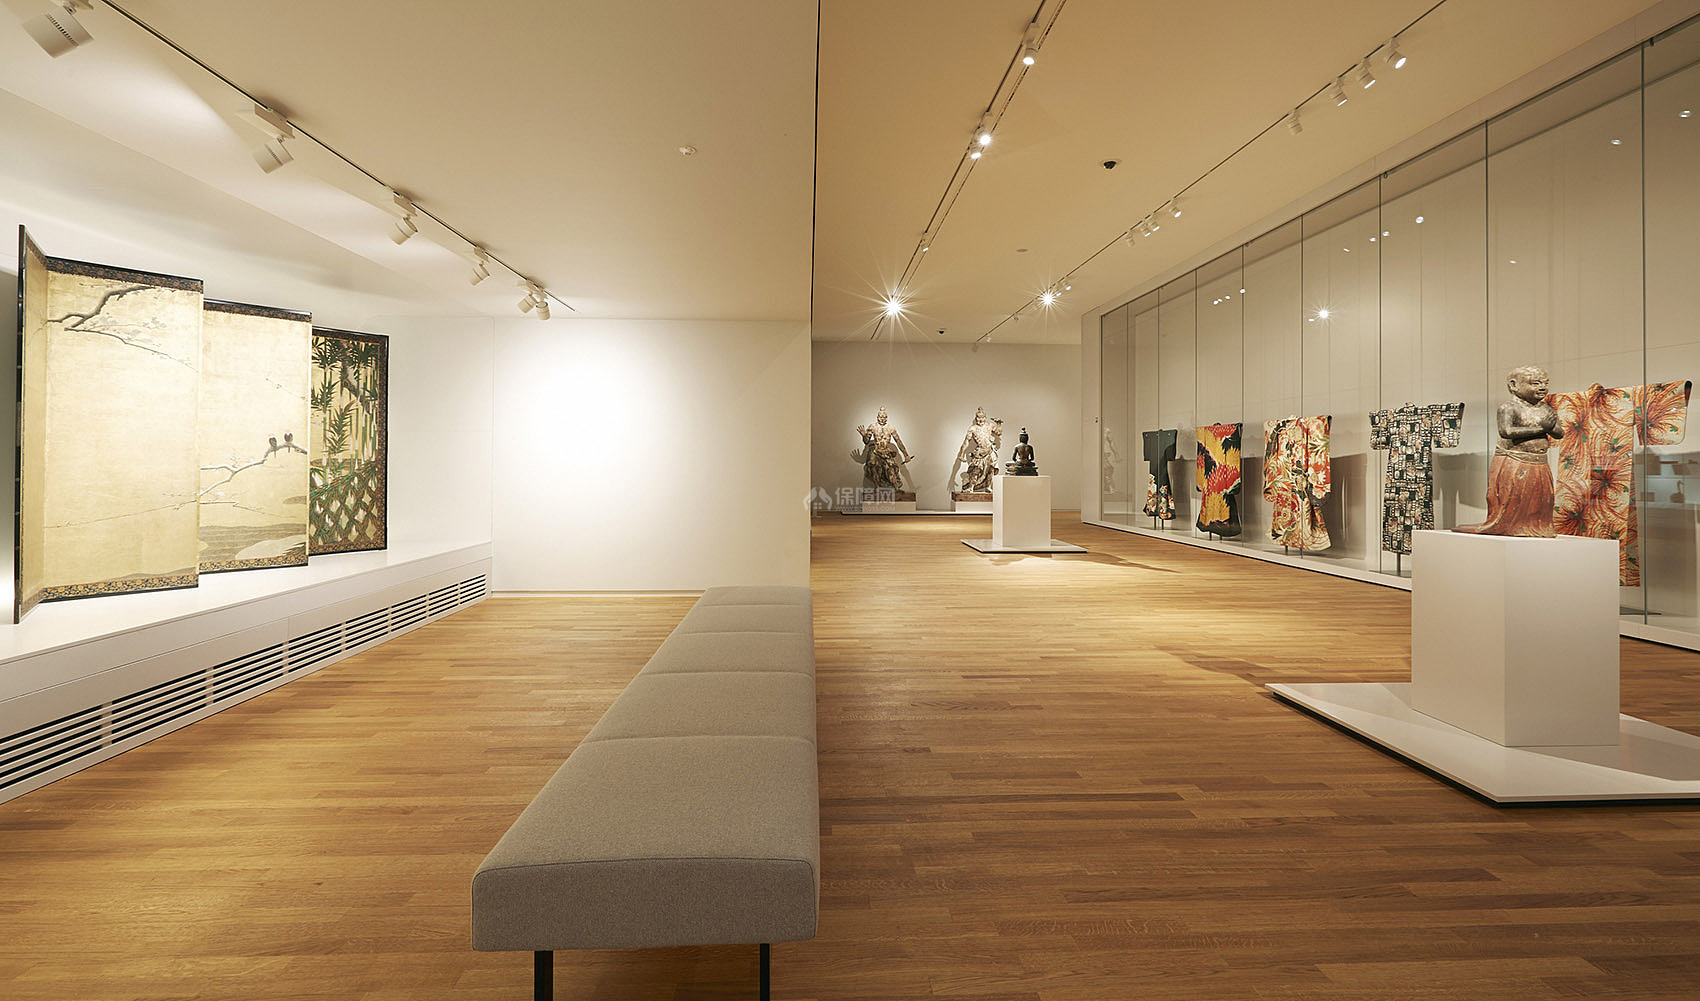 荷兰国家博物馆亚洲展馆之地下层展示空间设计效果图